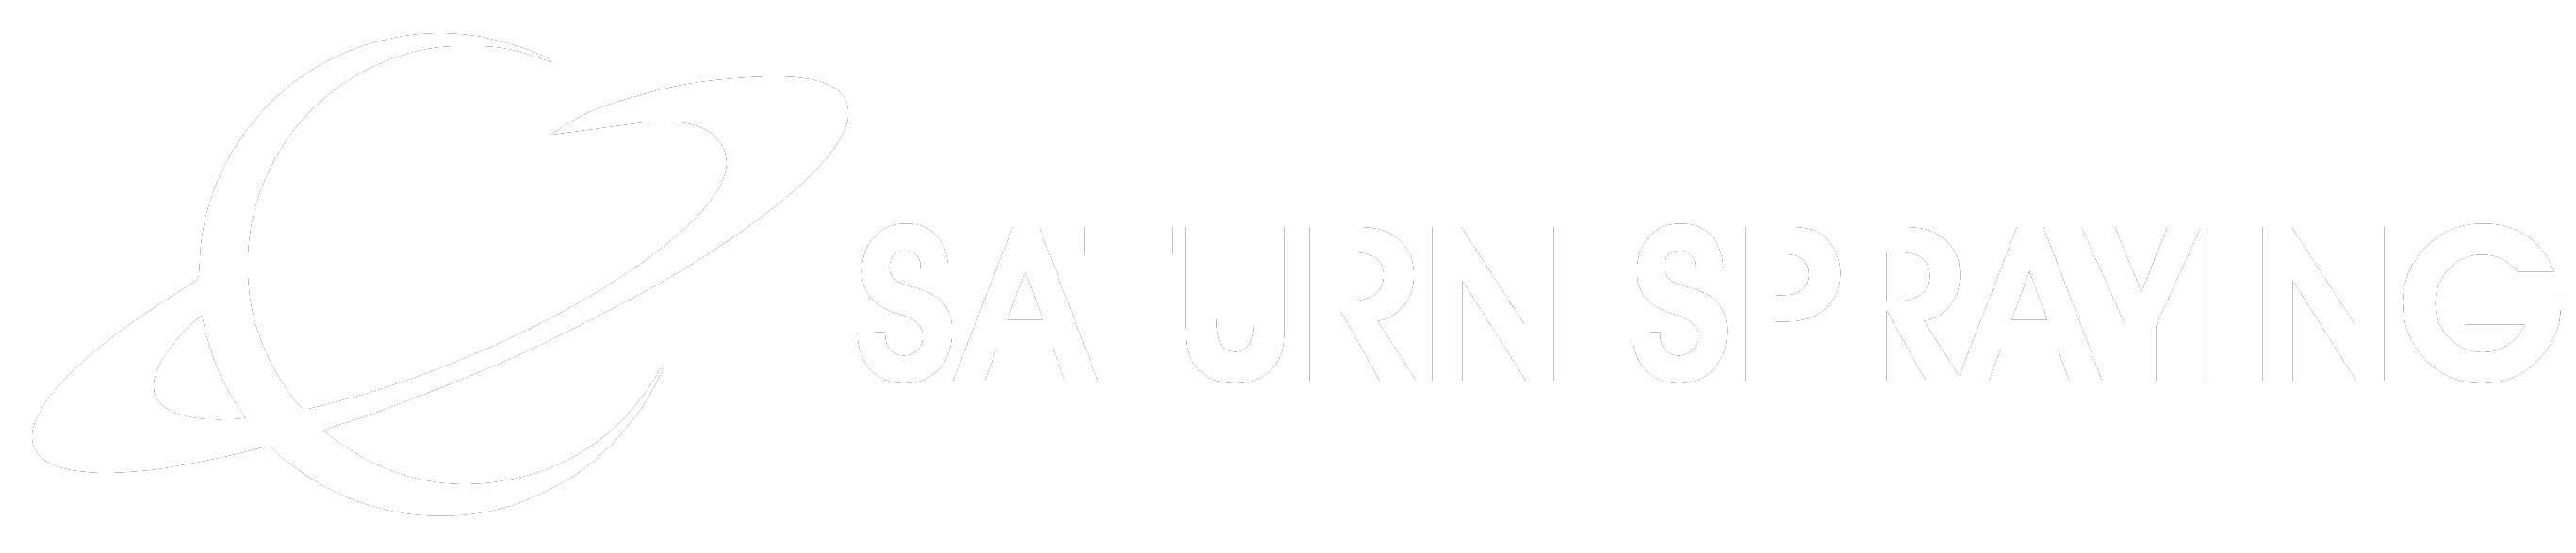 Saturn Spraying logo